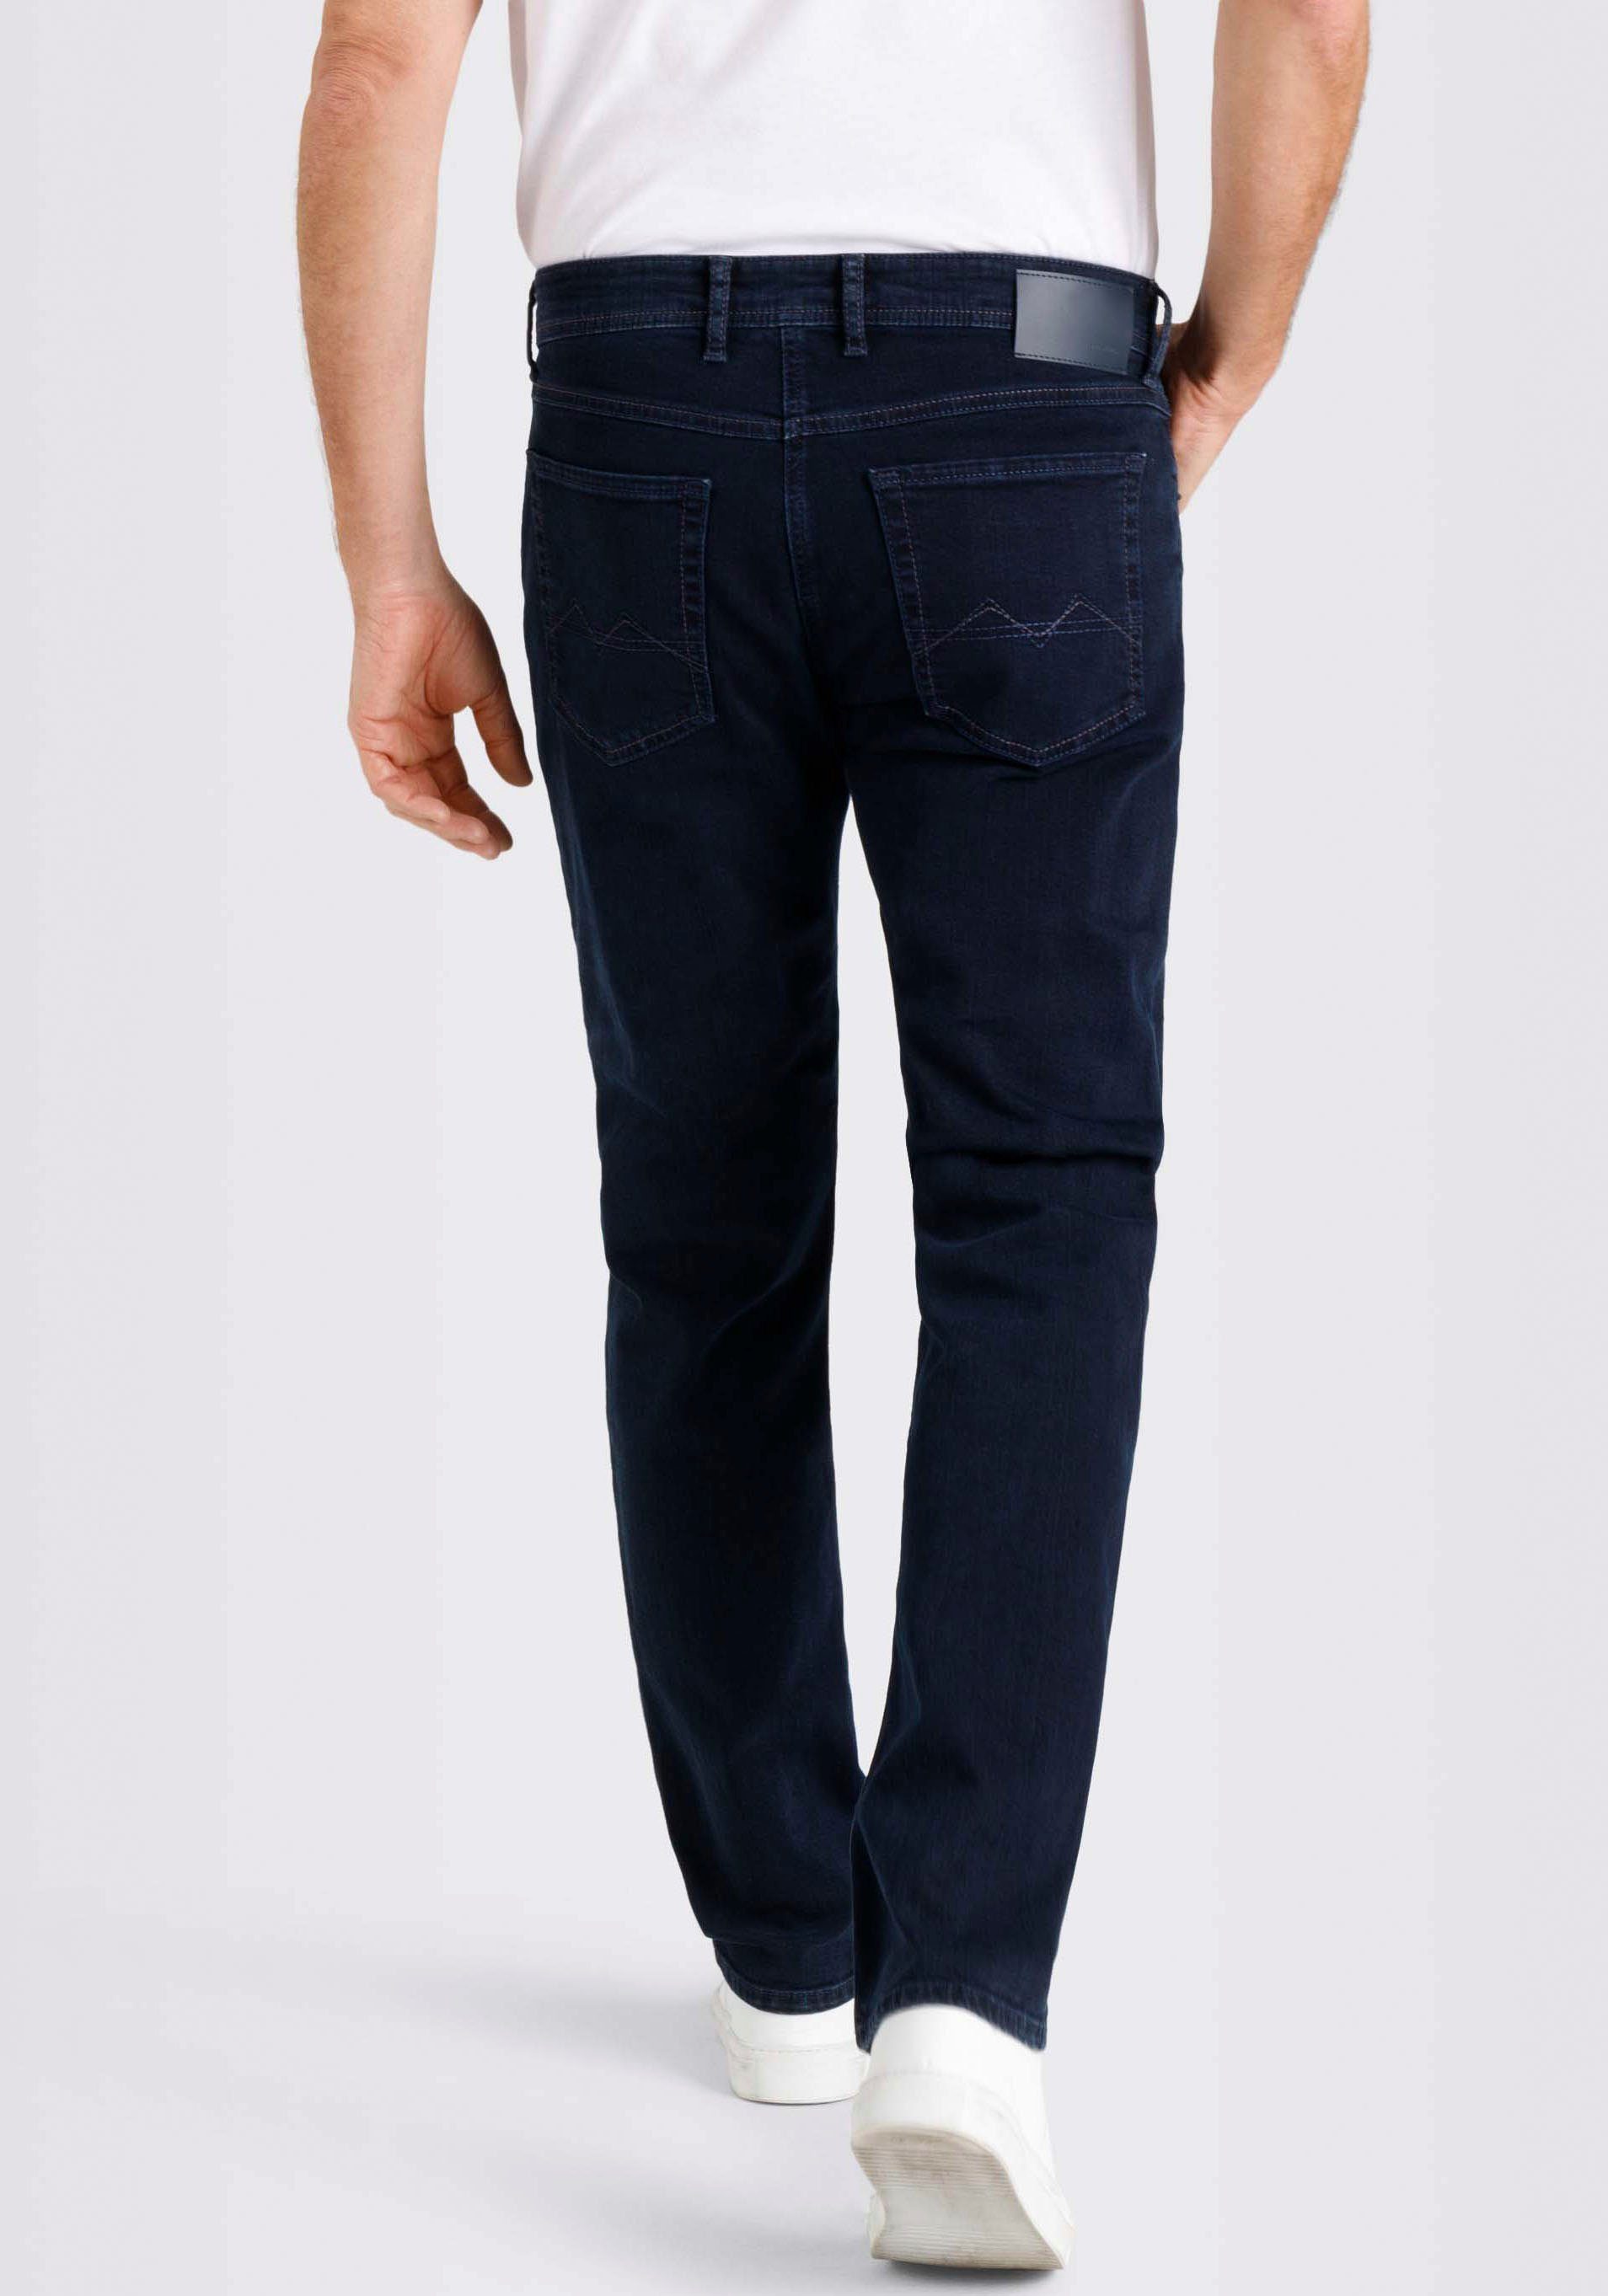 MAC Straight-Jeans Arne in gepflegter Stretch blue-black Optik, mit